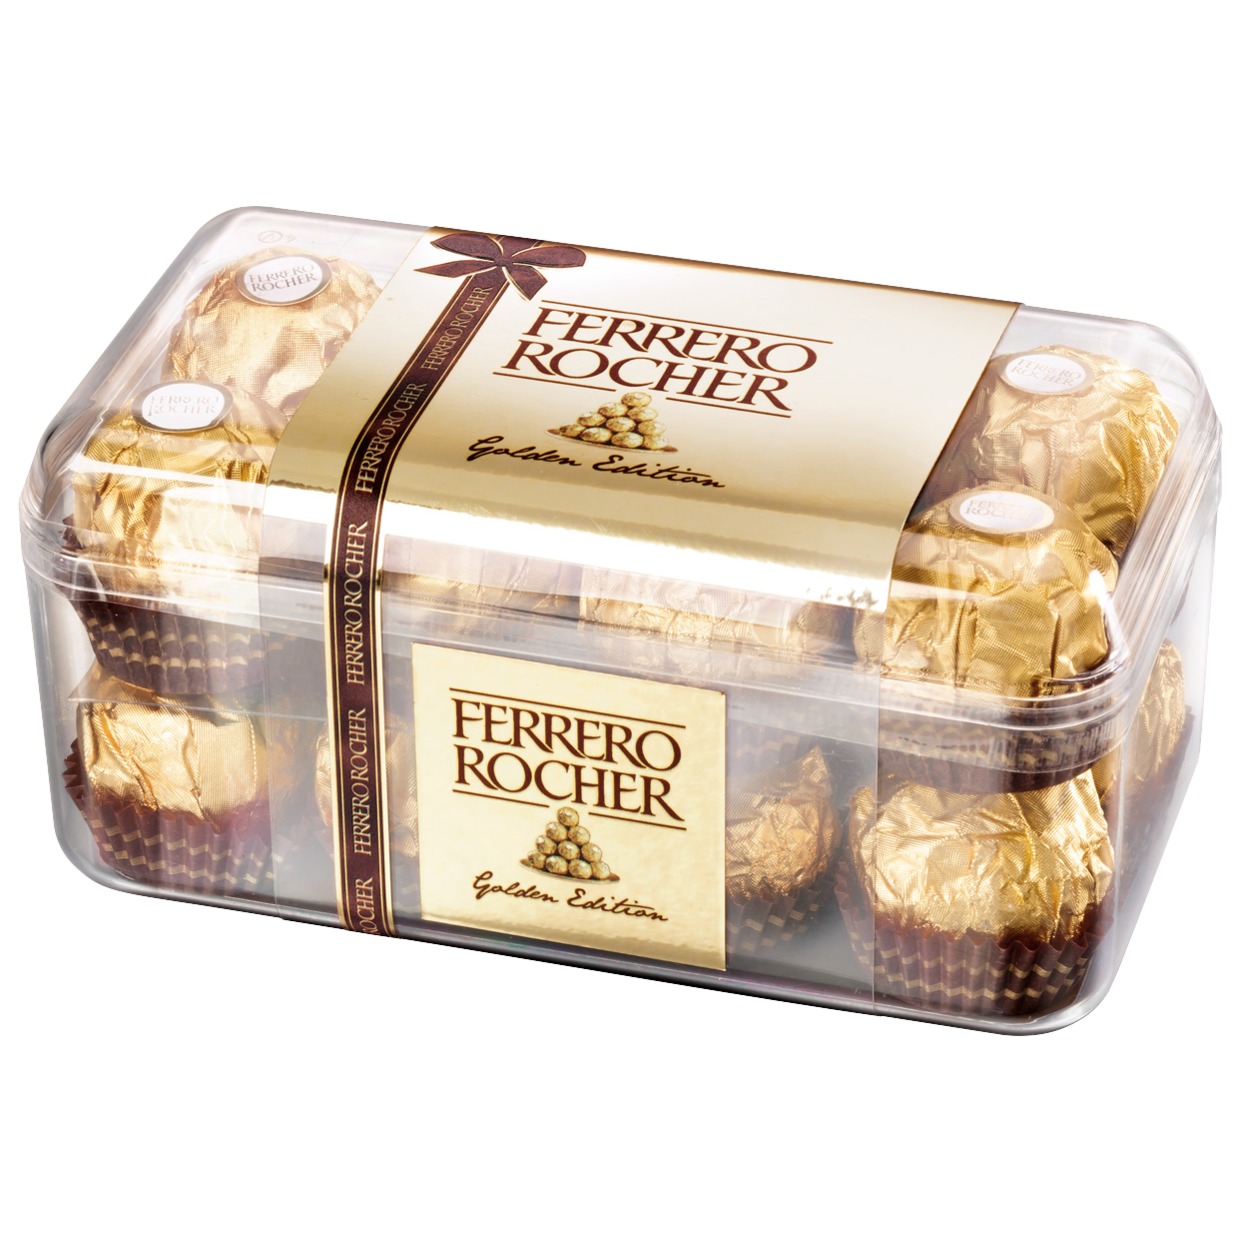 Конфеты Ferrero Rocher хрустящие из молочного шоколада 200г по акции в Пятерочке